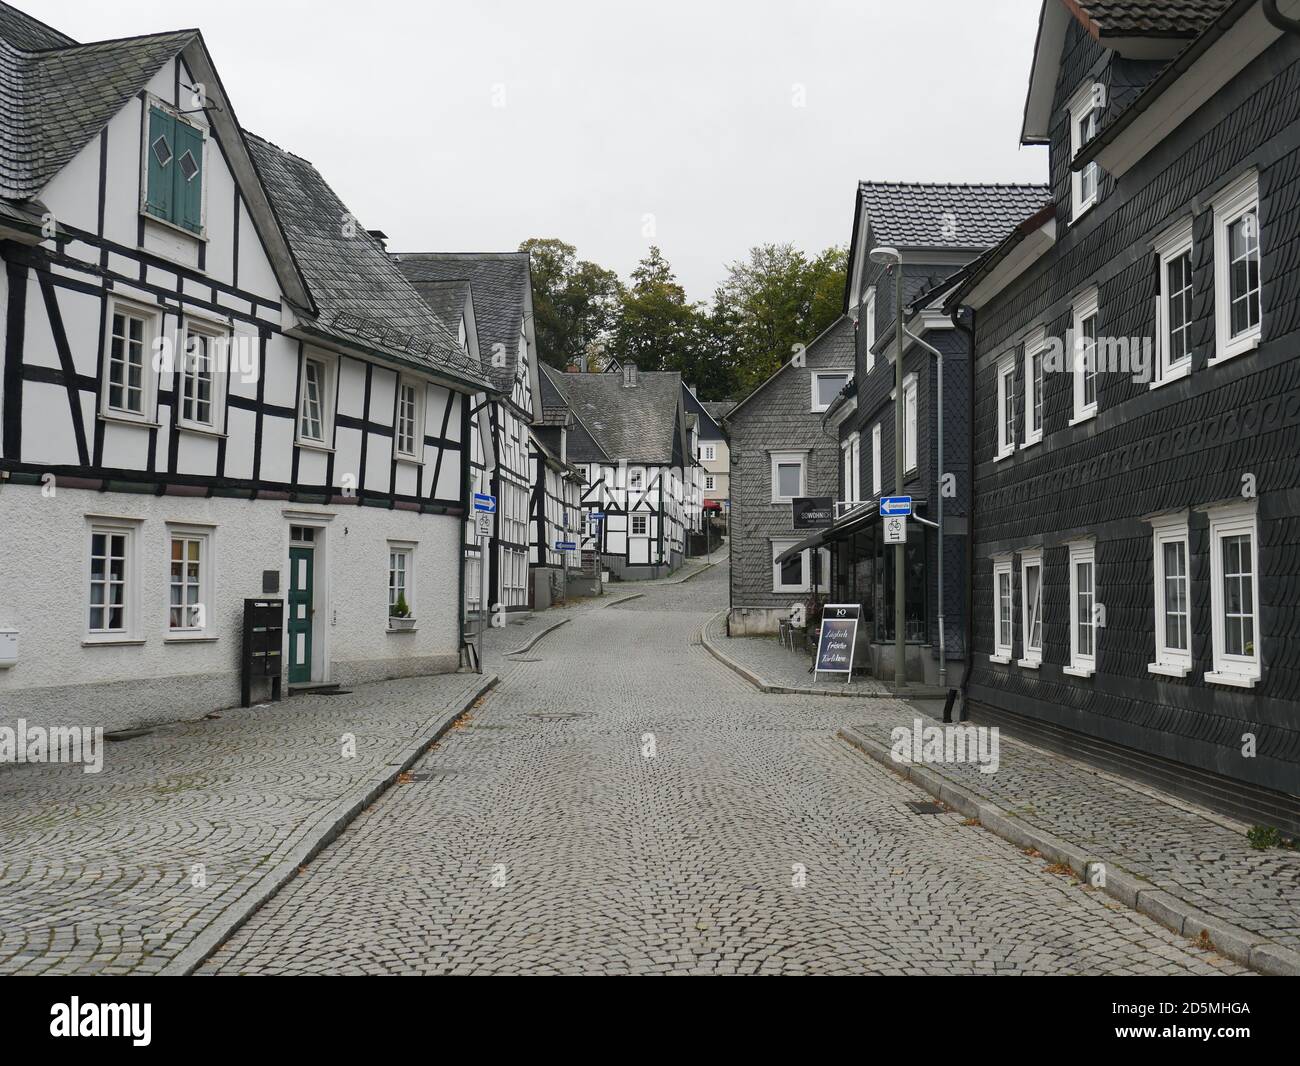 Altstadt von Freudenberg. Wünderschöne Fachwerkhäuser, die sogenannten weißen Flecken von Freudenberg. Foto Stock